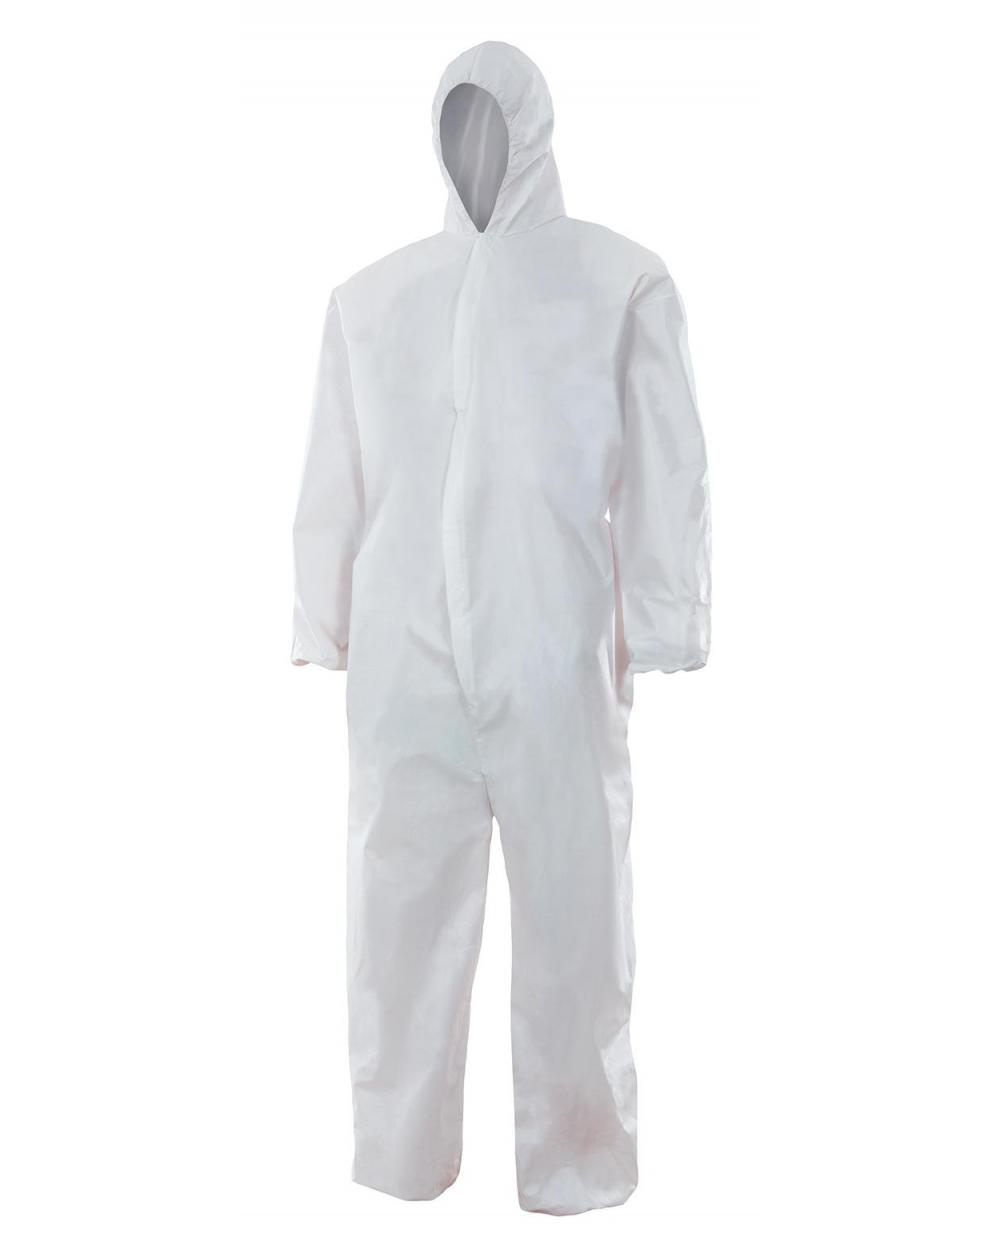 Comprar Mono con capucha desechable serie 201 online barato Blanco